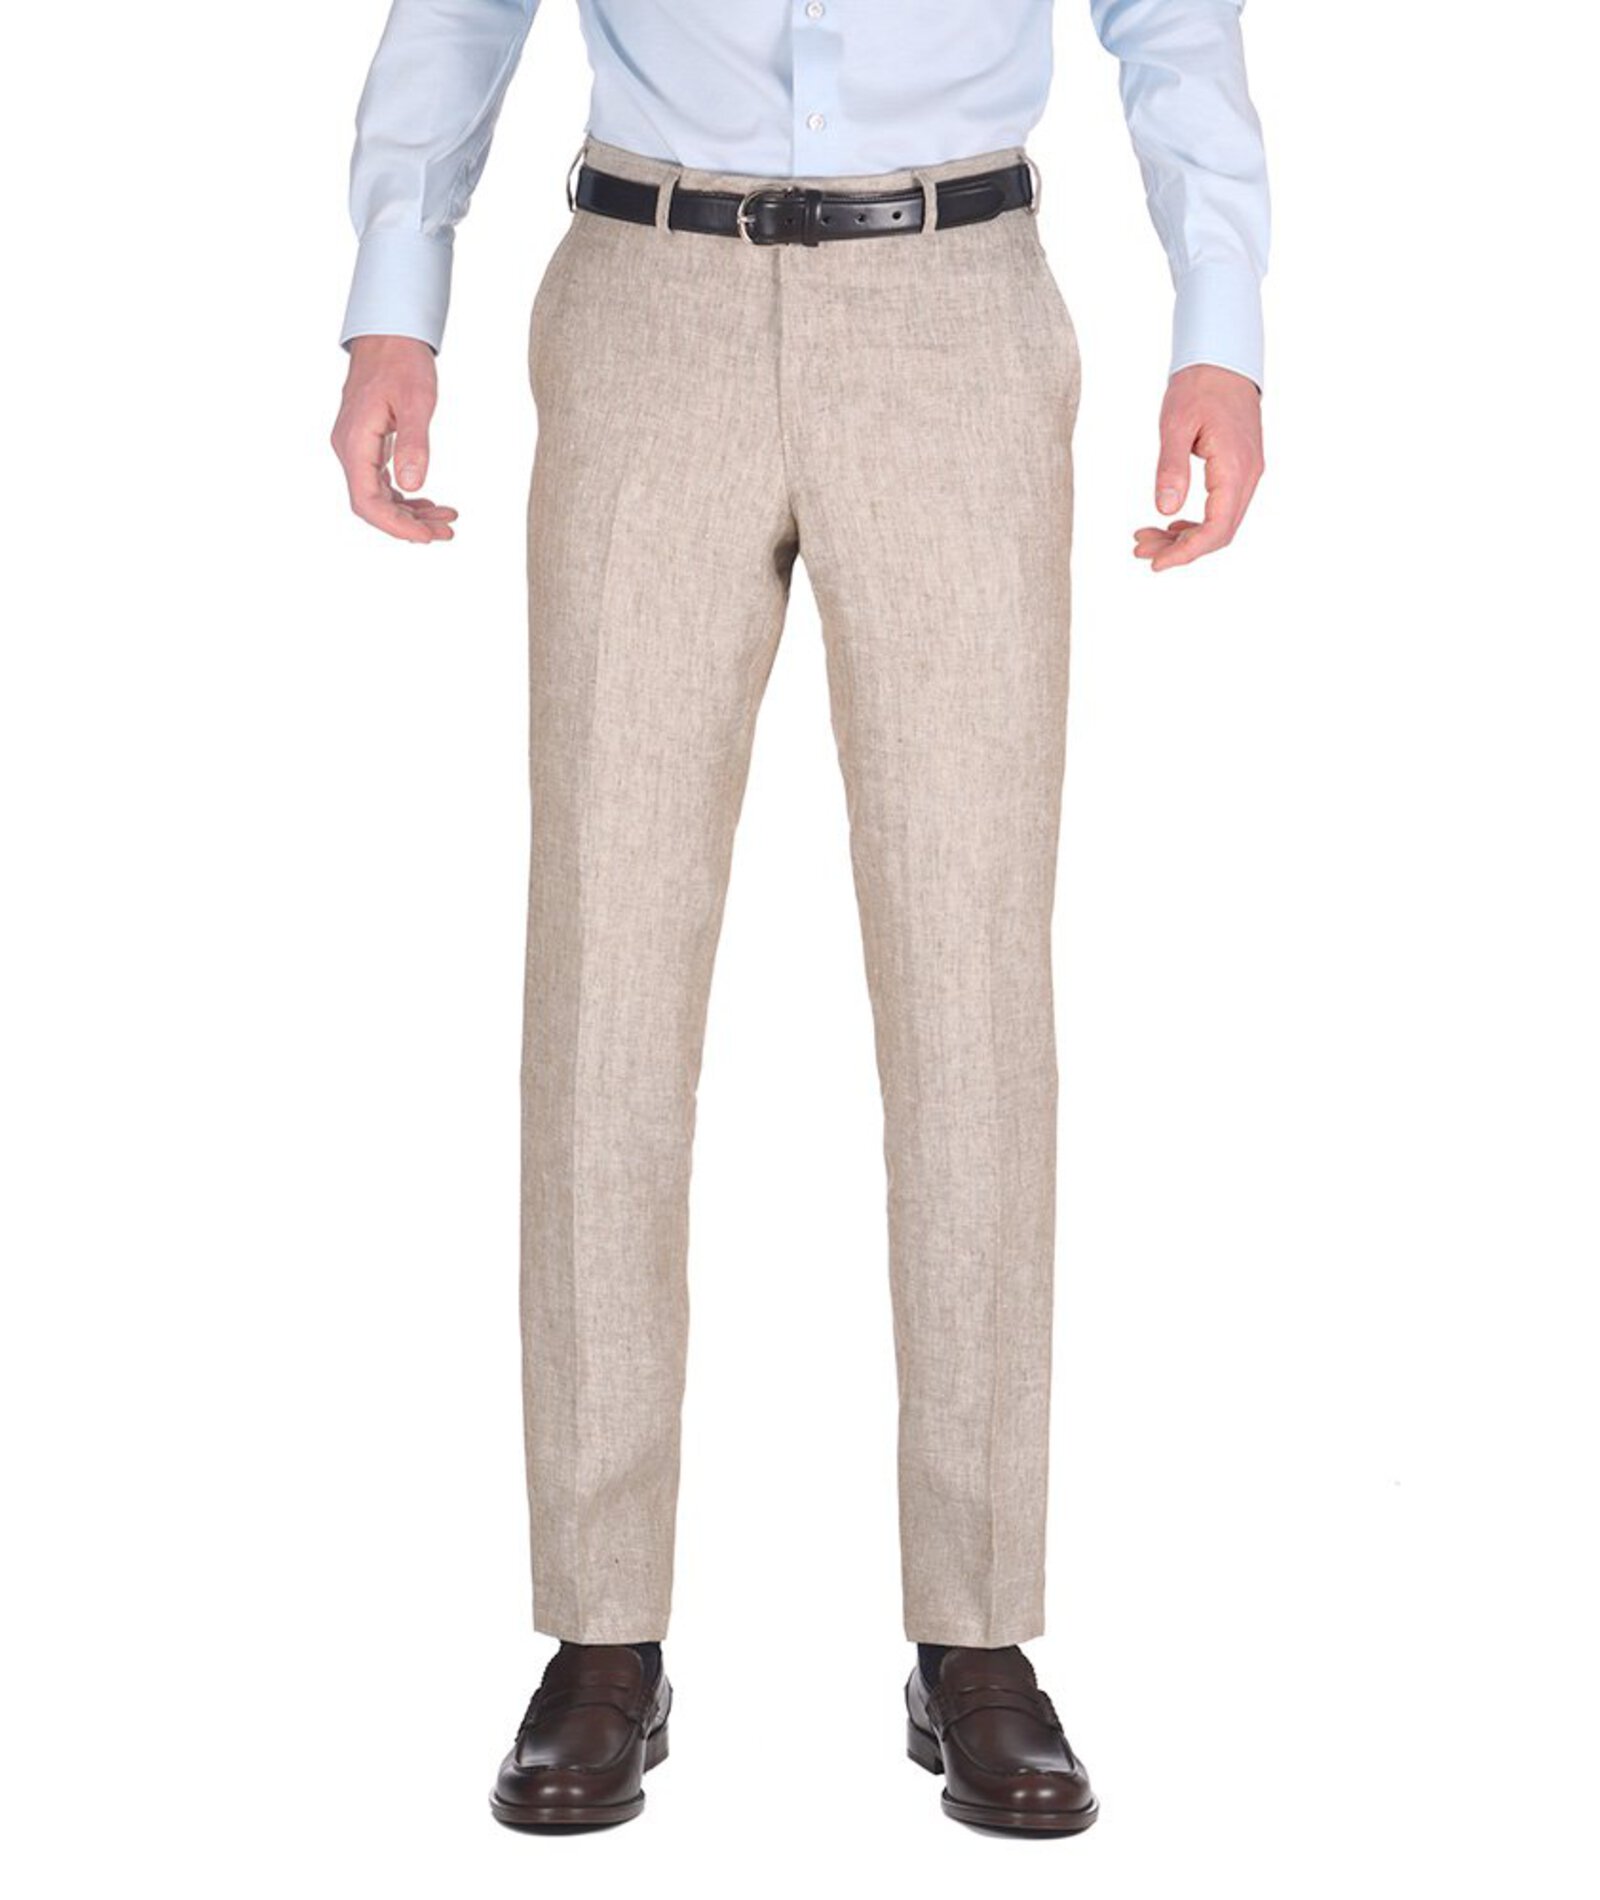 Beige Linen Chinos For Men Online, Custom Tailored | Lanieri